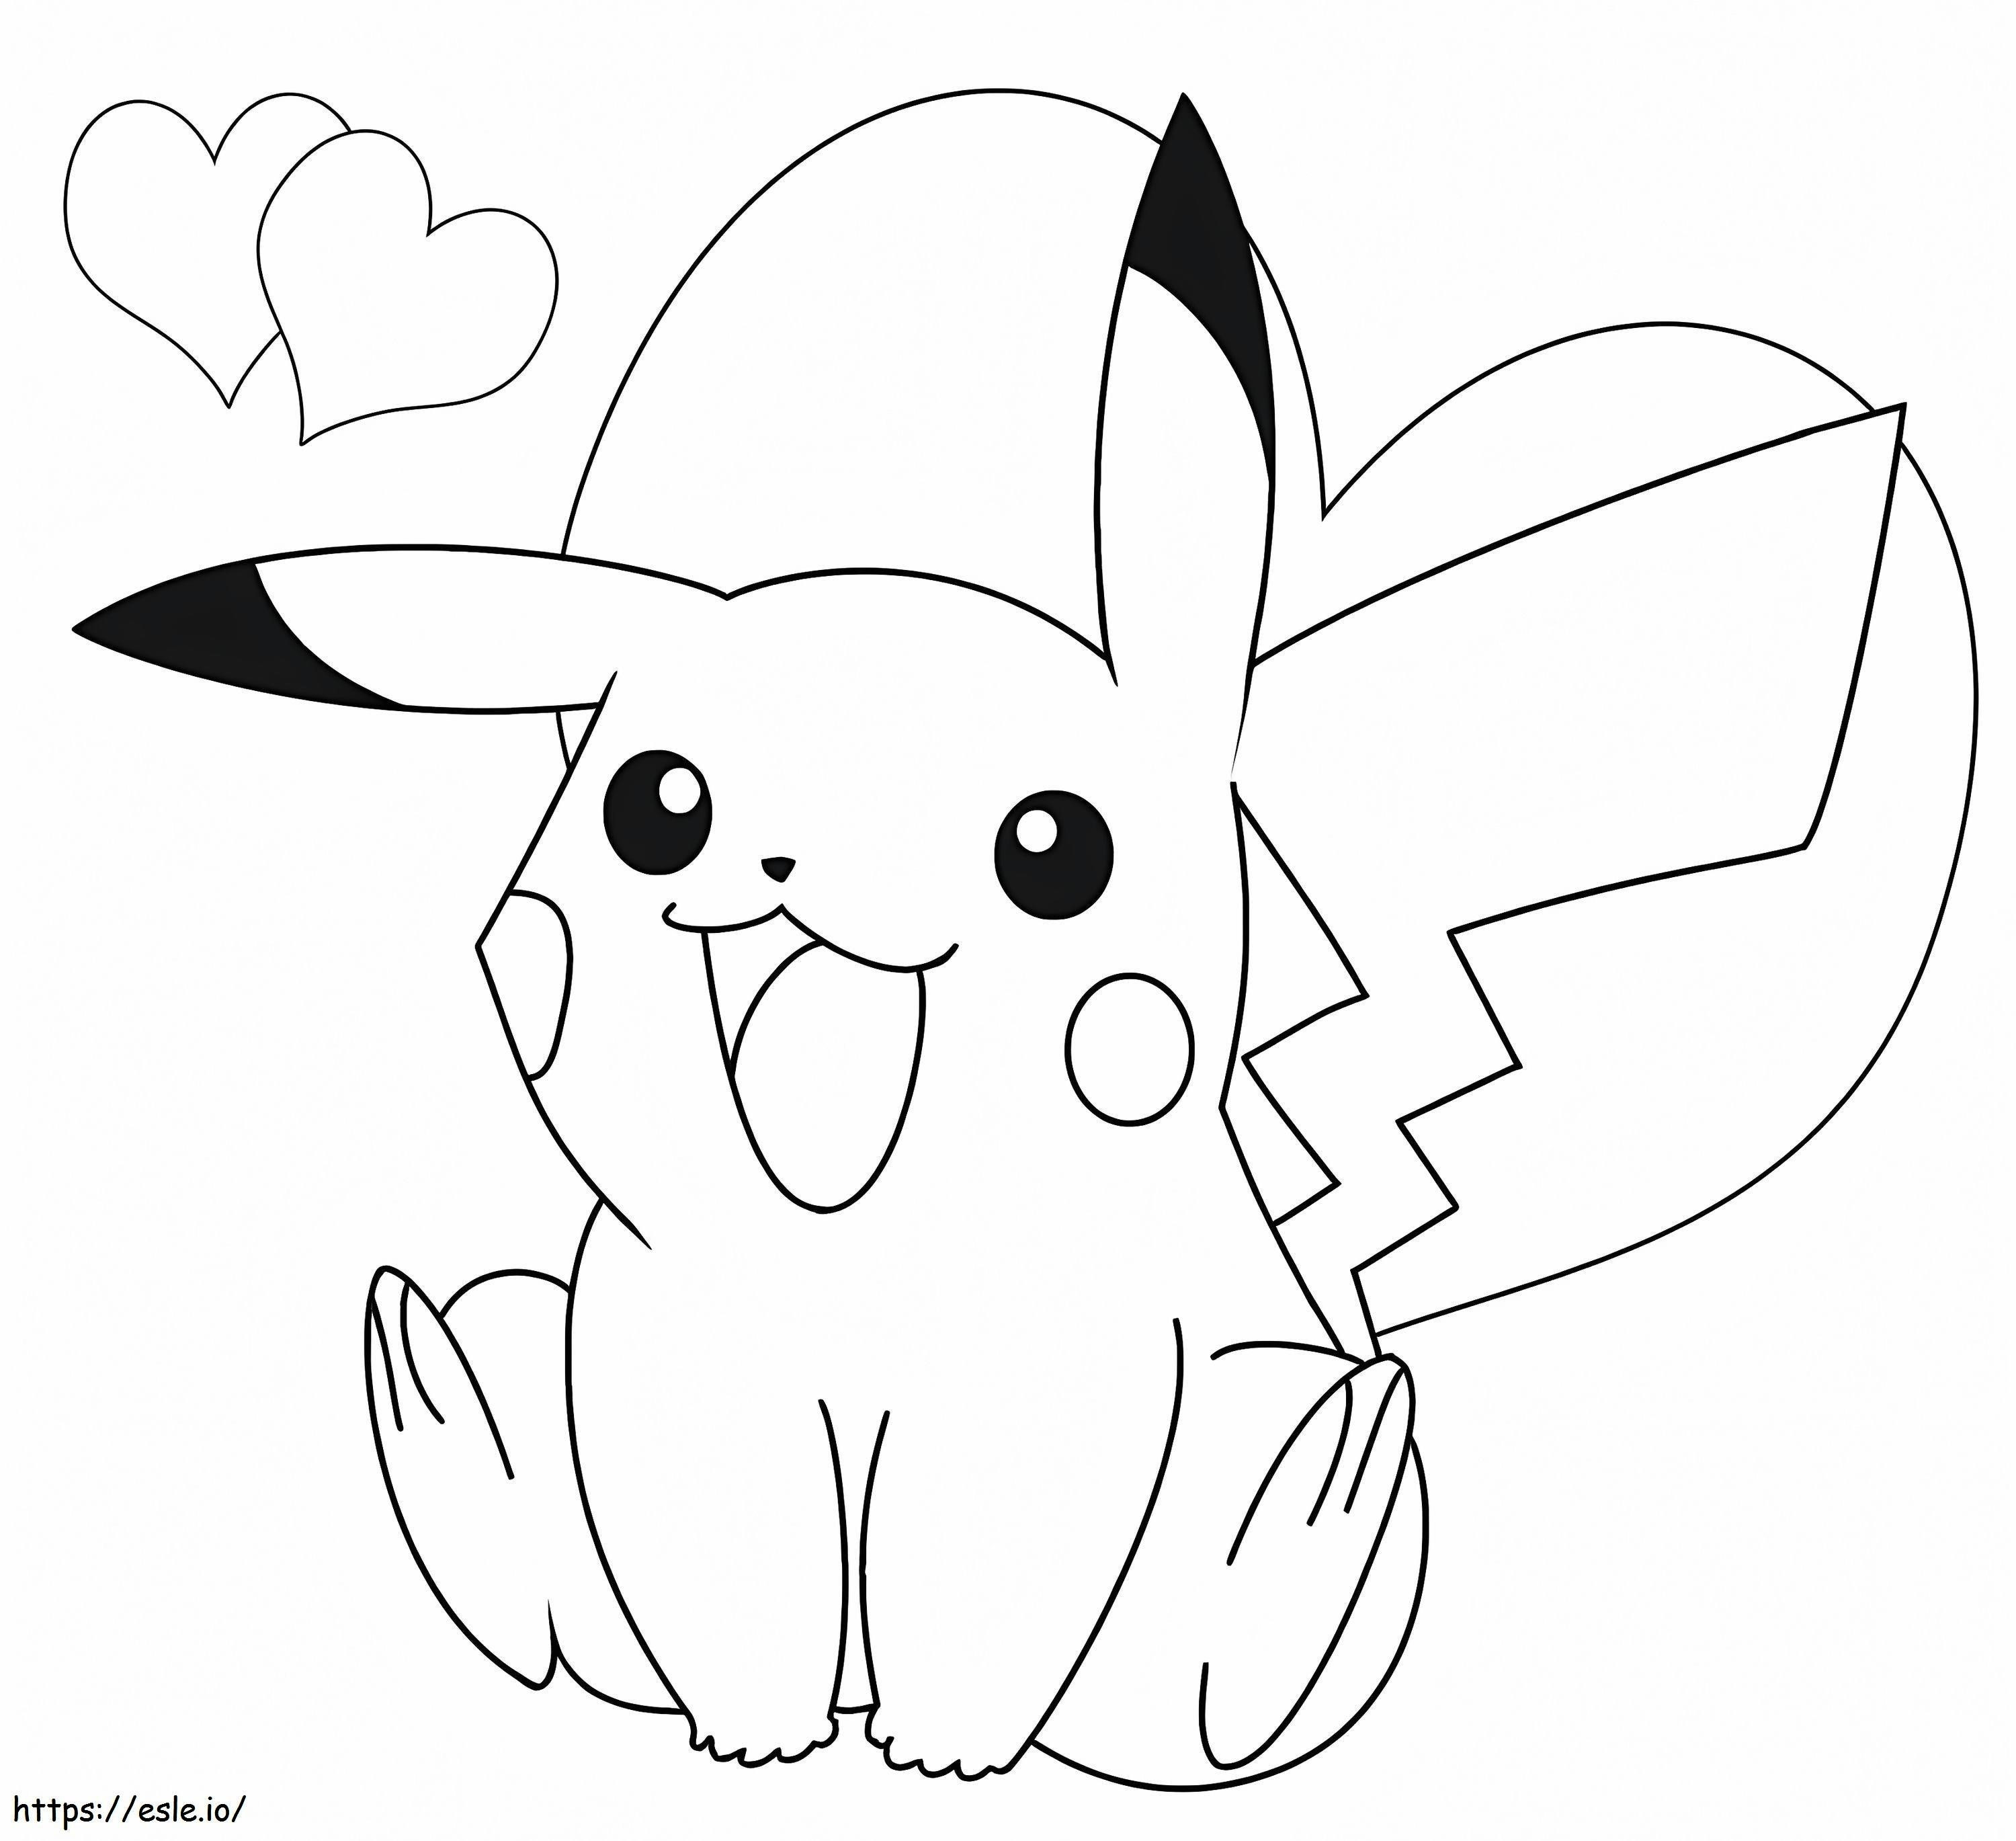 Coloriage Adorable Pikachu à imprimer dessin